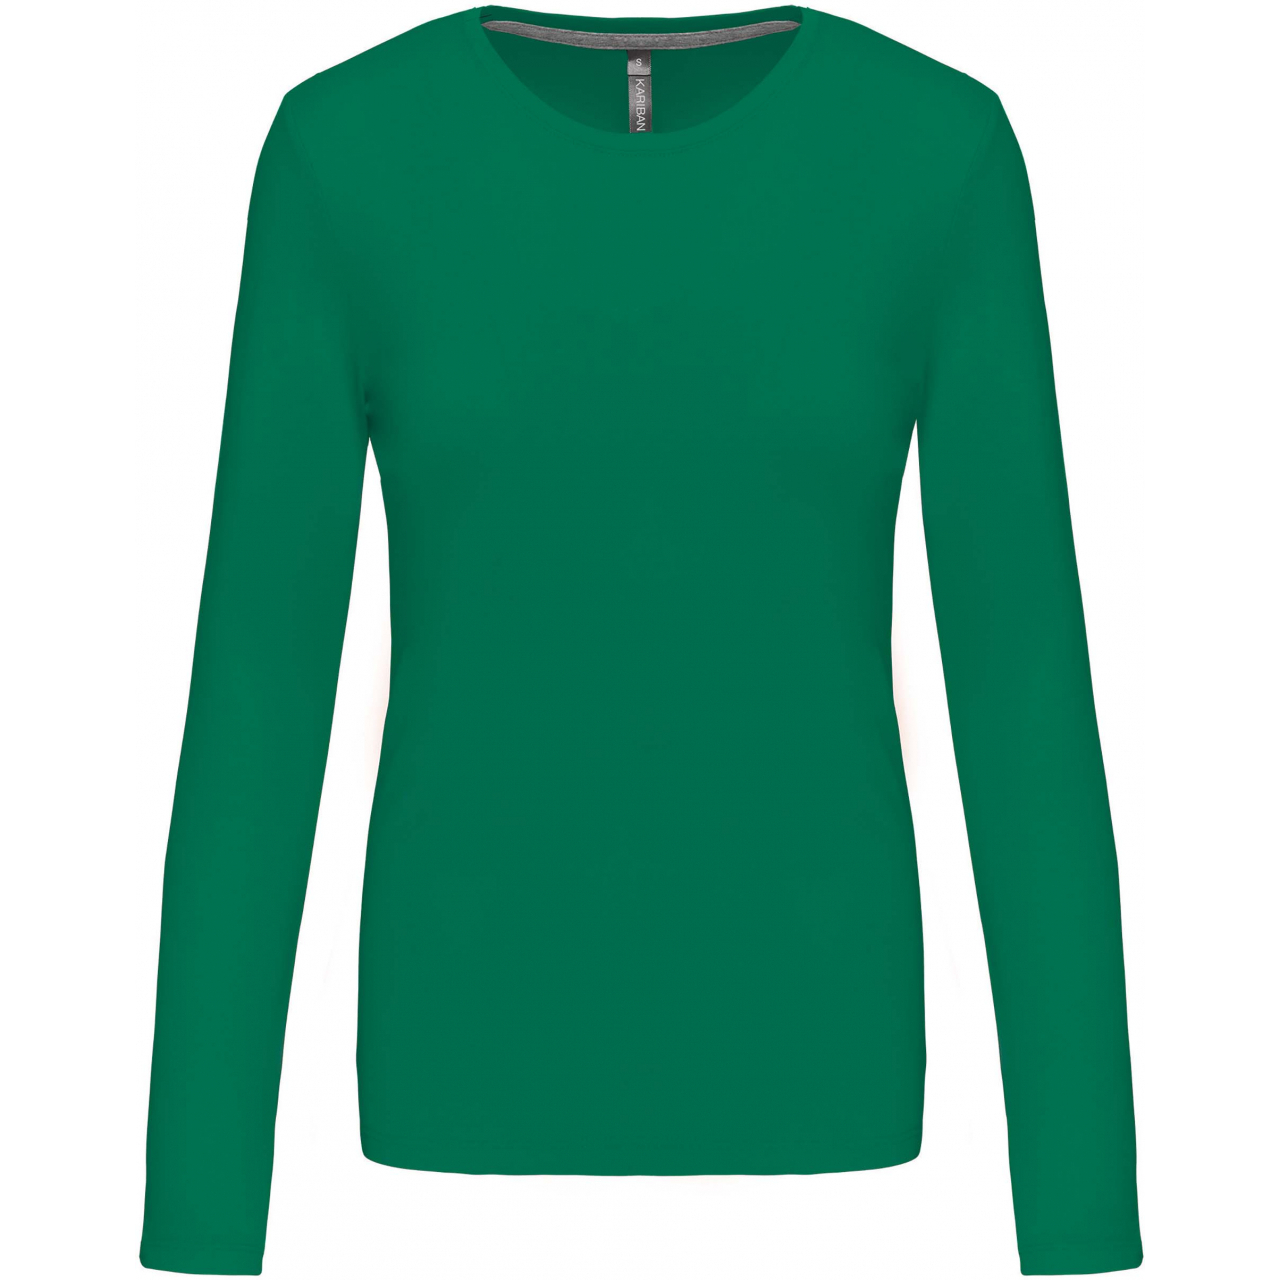 Dámské tričko Kariban dlouhý rukáv - zelené, 3XL